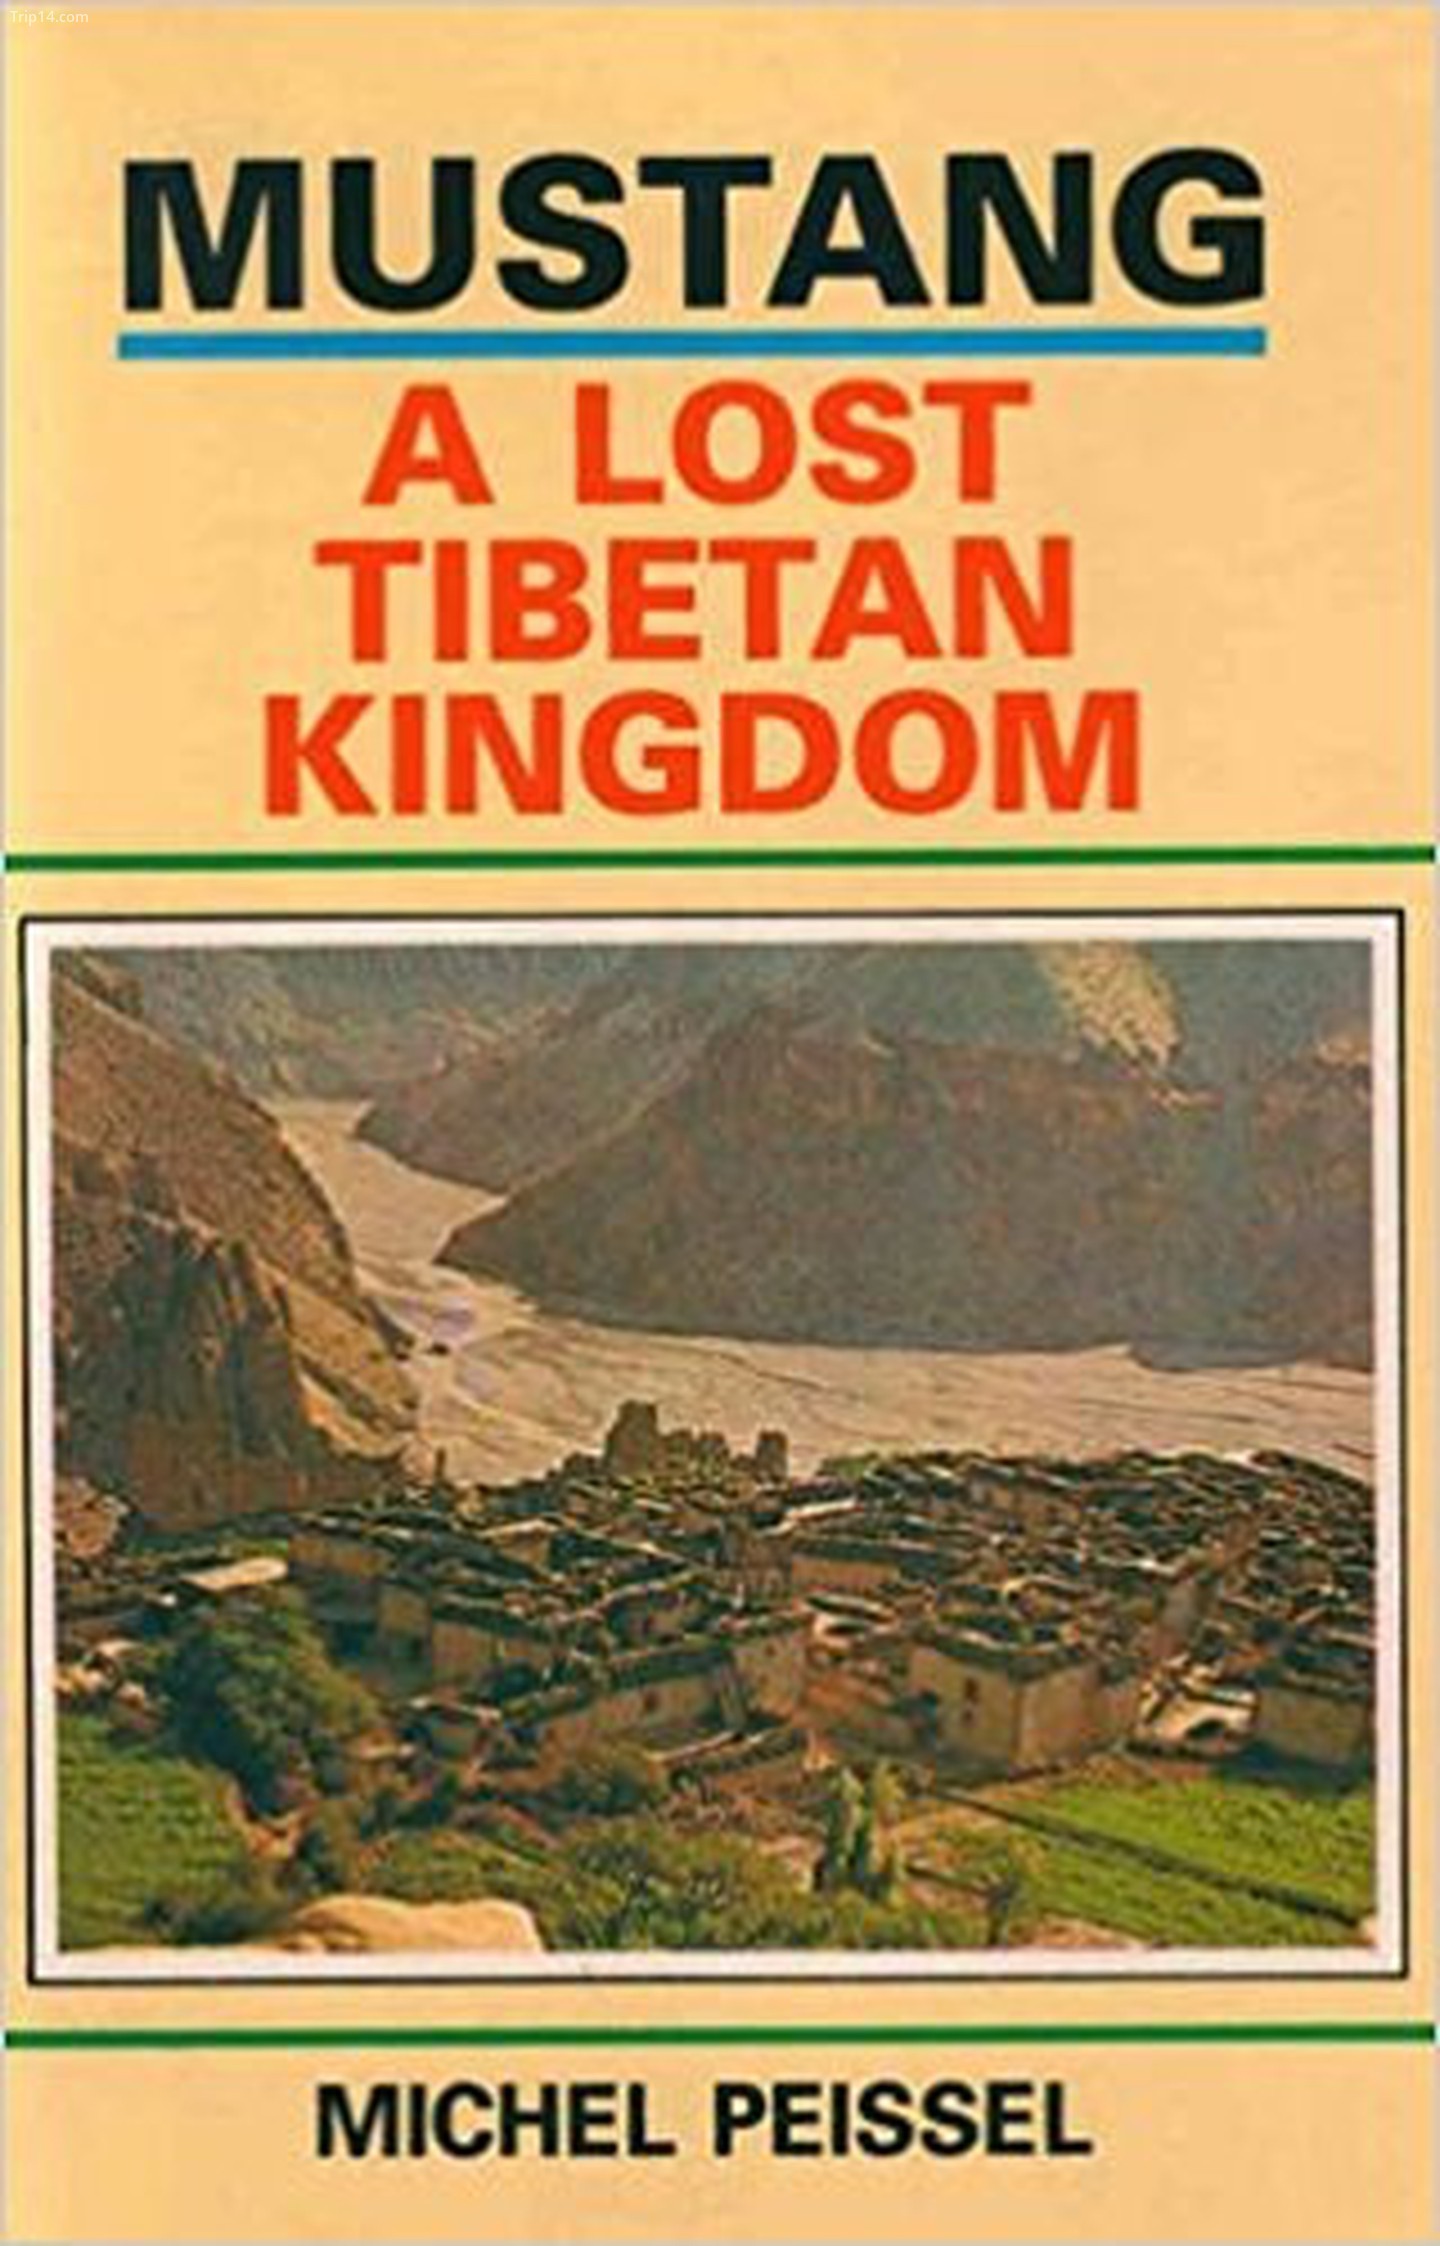 Mustang, Một Vương quốc Tây Tạng đã mất (1967) của Michel Piessel